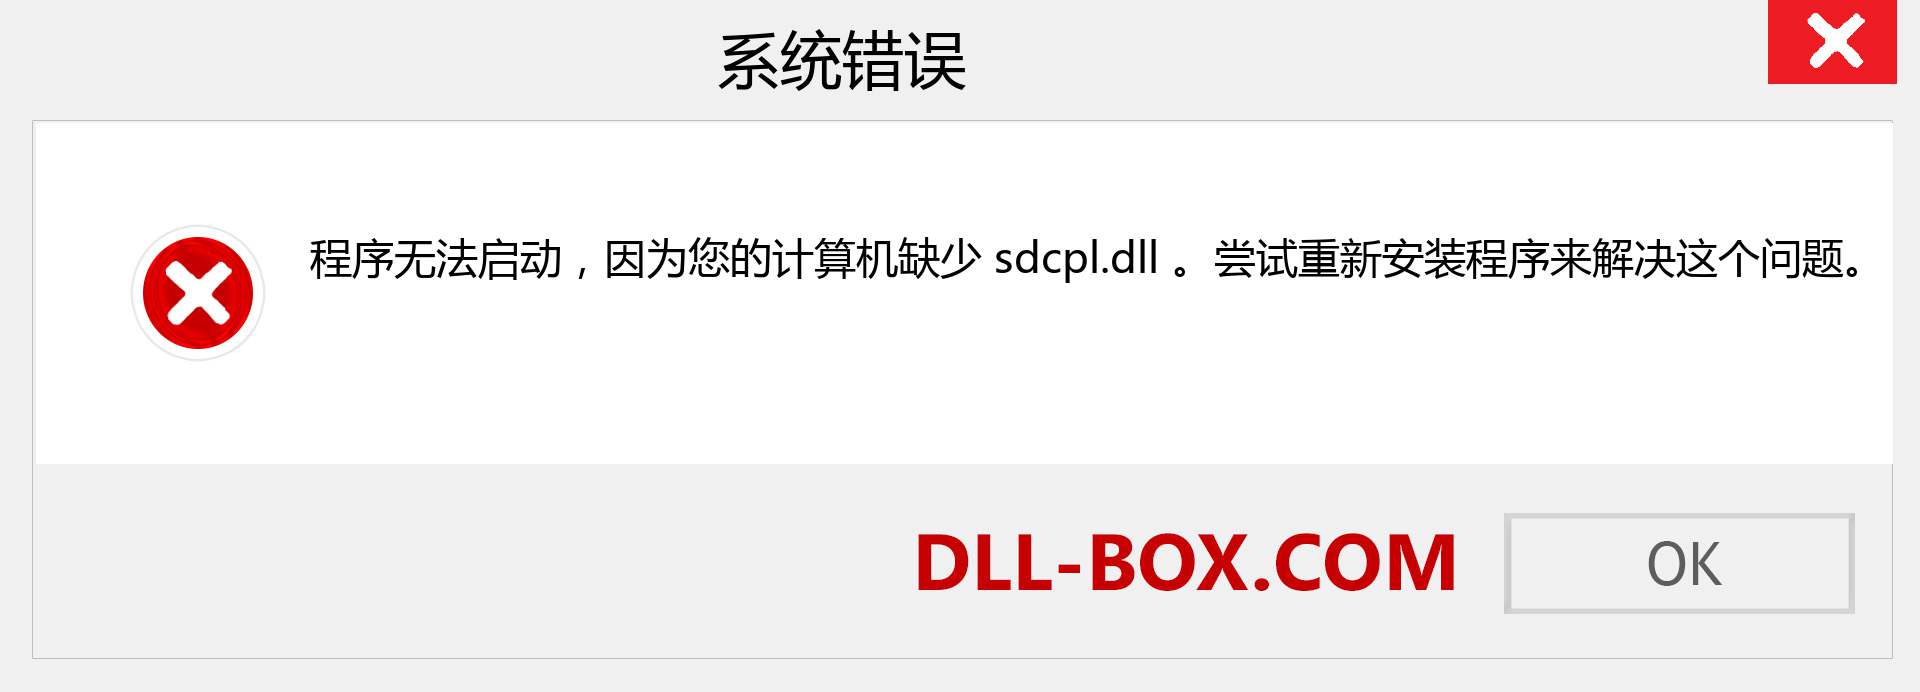 sdcpl.dll 文件丢失？。 适用于 Windows 7、8、10 的下载 - 修复 Windows、照片、图像上的 sdcpl dll 丢失错误